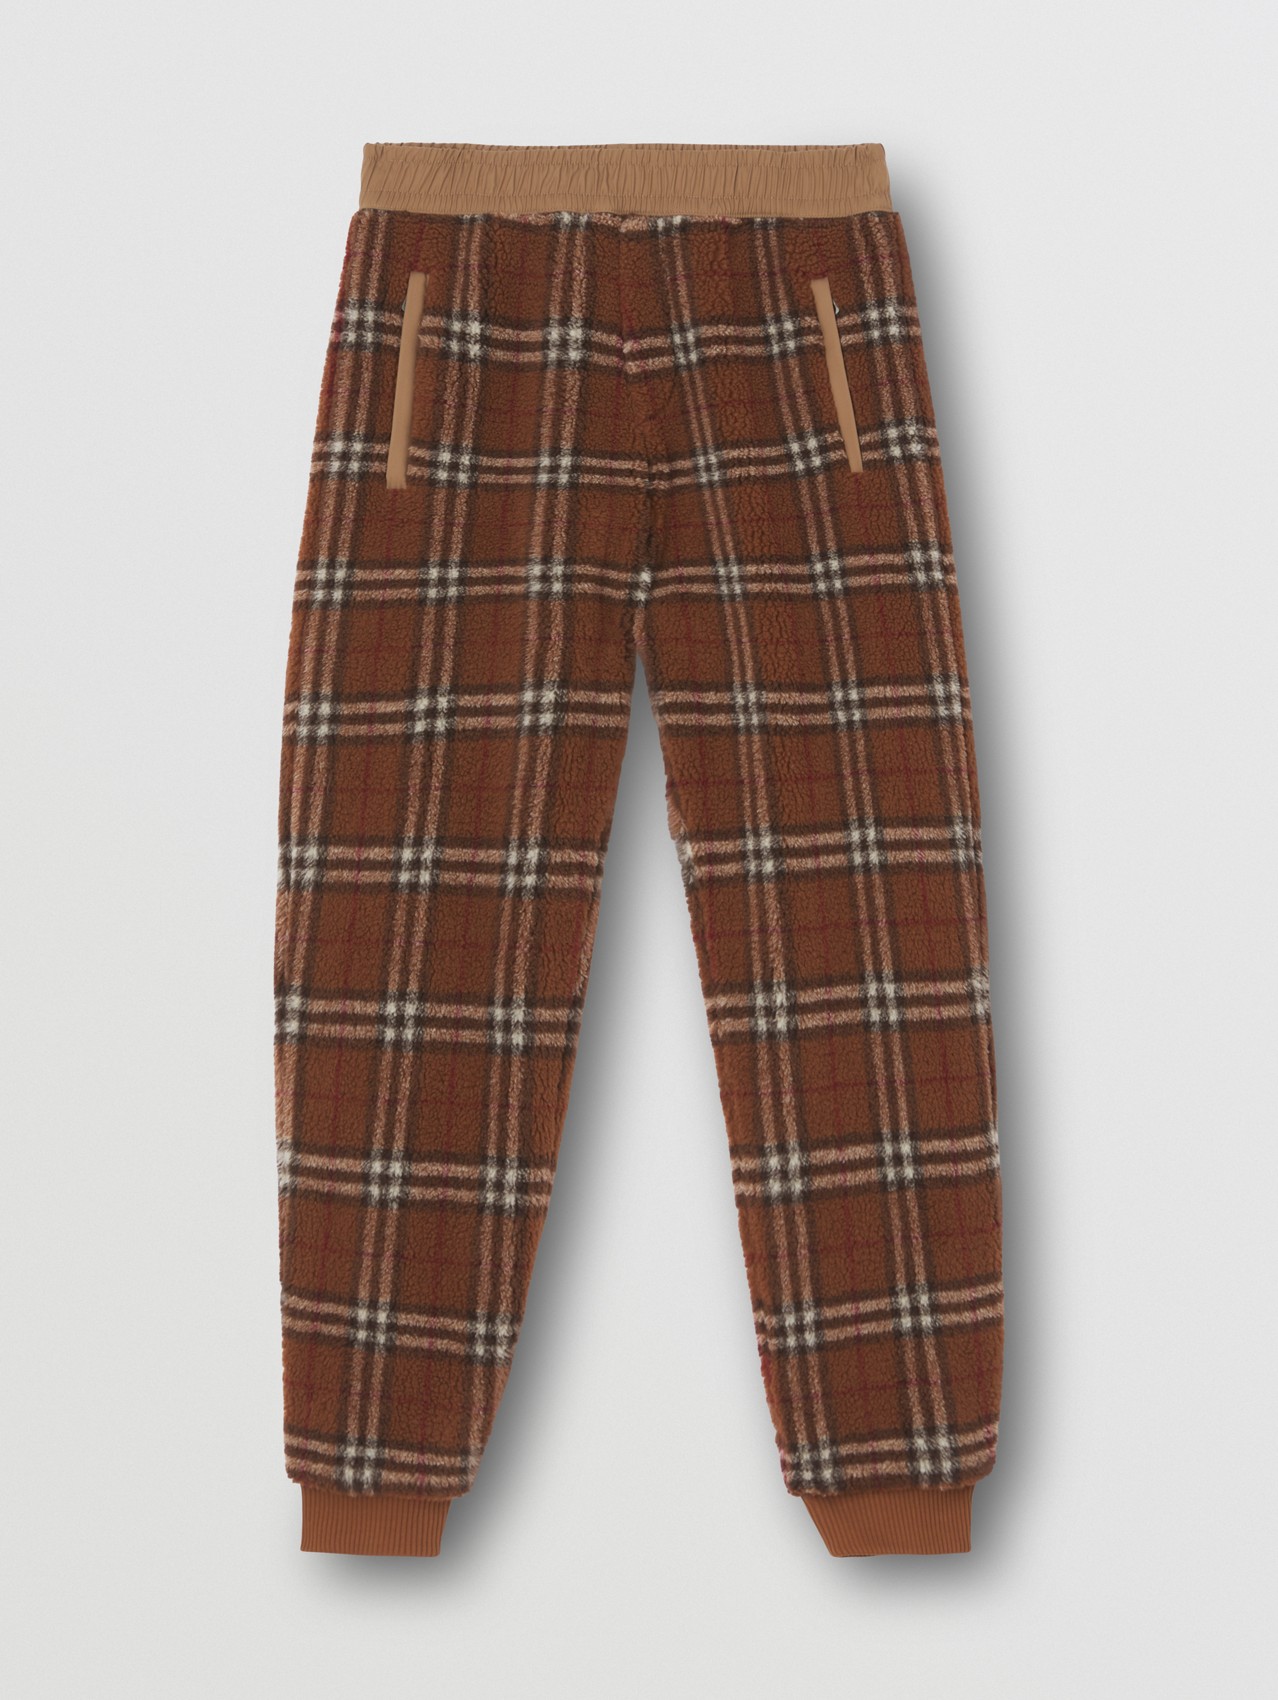 Pantaloni da jogging in pile con motivo Vintage check (Marrone Betulla Scuro)